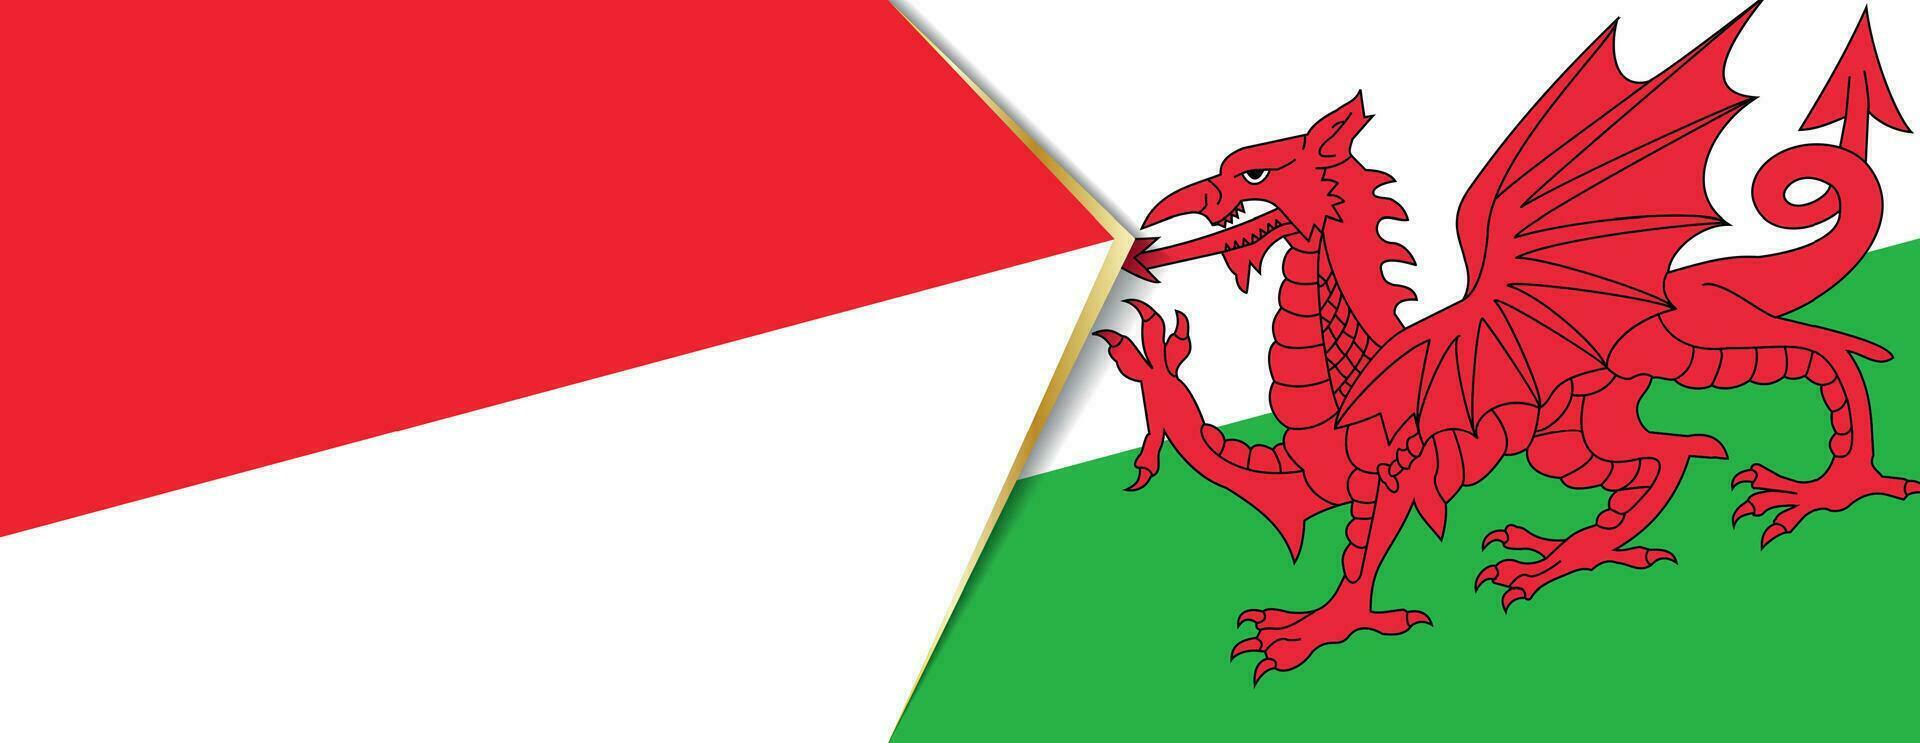 Indonesia y Gales banderas, dos vector banderas